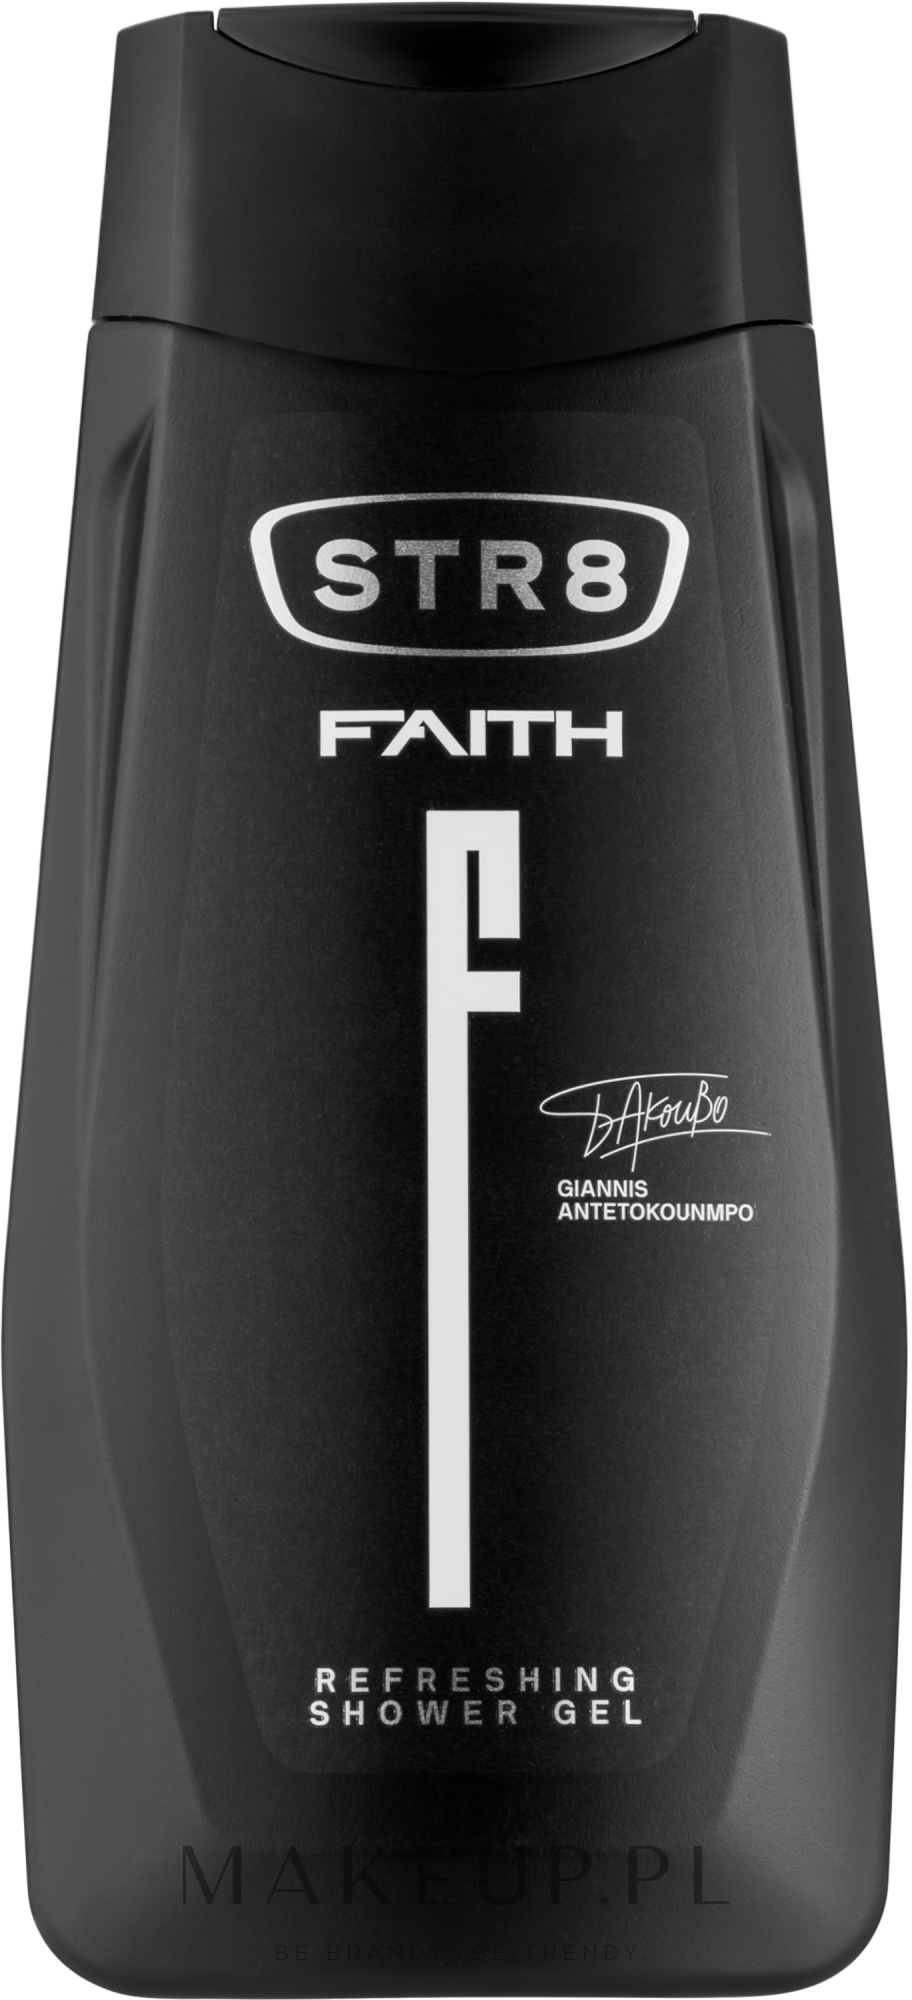 Perfumowany żel pod prysznic dla mężczyzn - STR8 Faith Shower Gel — Zdjęcie 250 ml